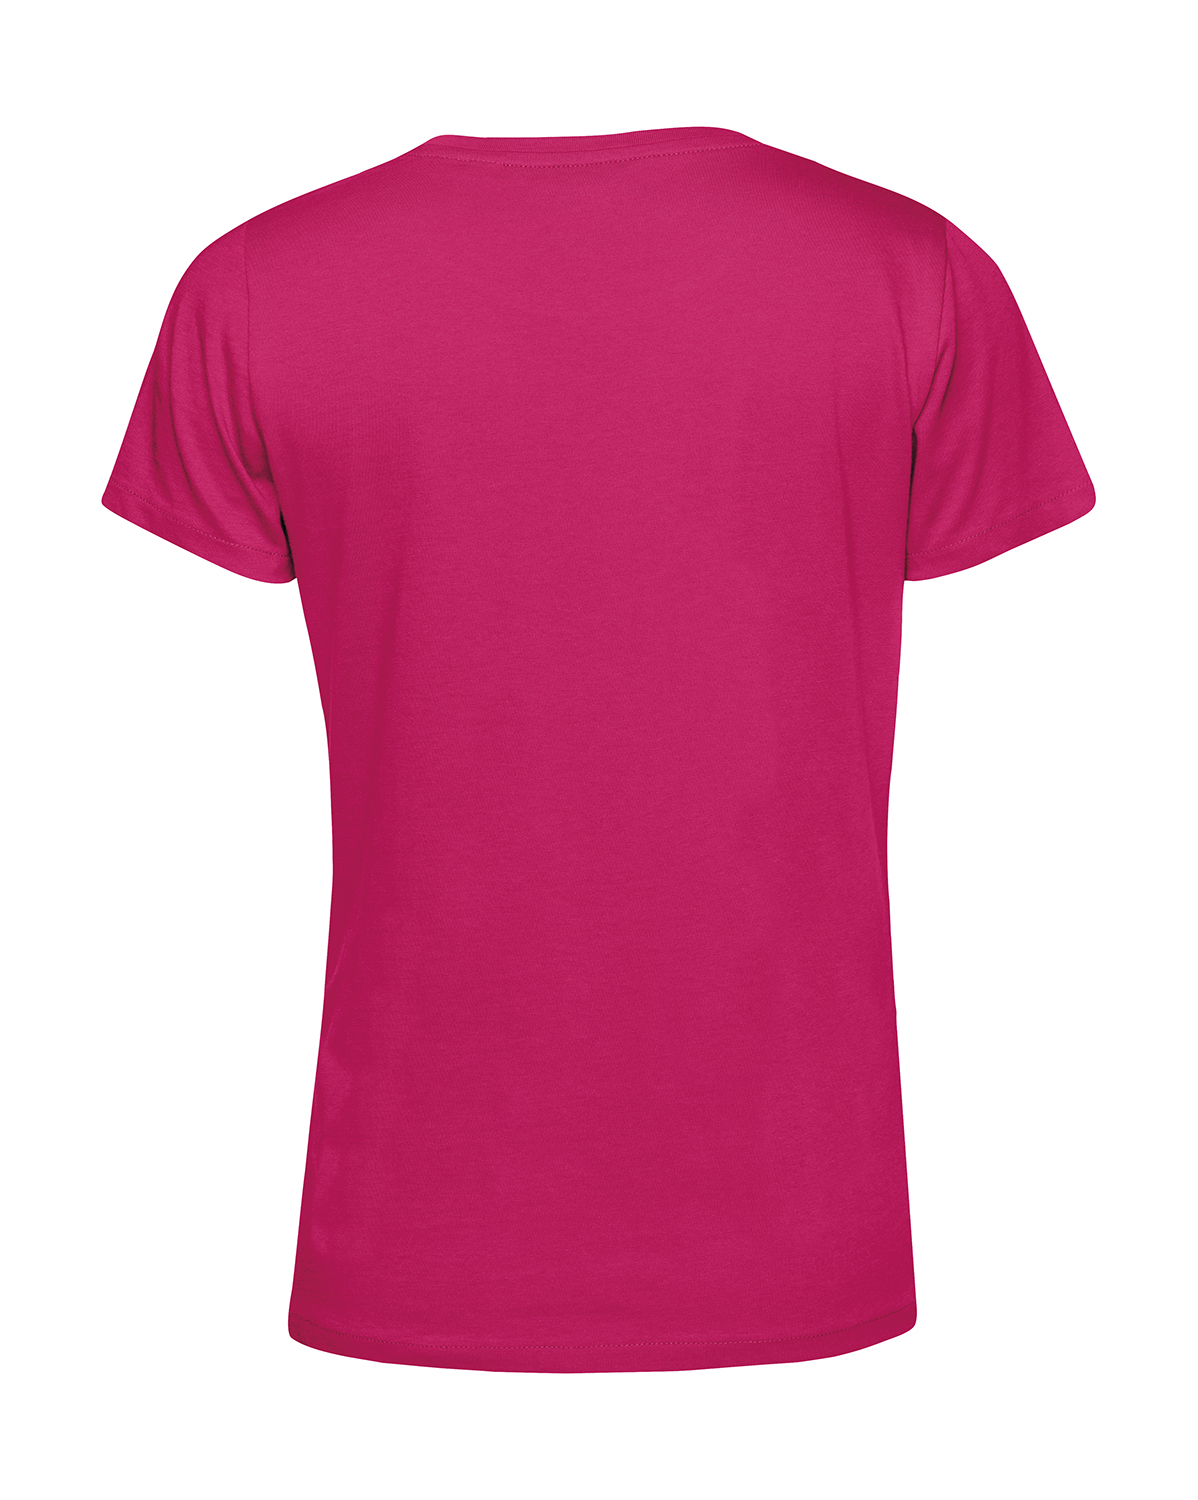 Nachhaltiges T-Shirt Damen 2Takt - Ganze Tankfüllung Schwalbe